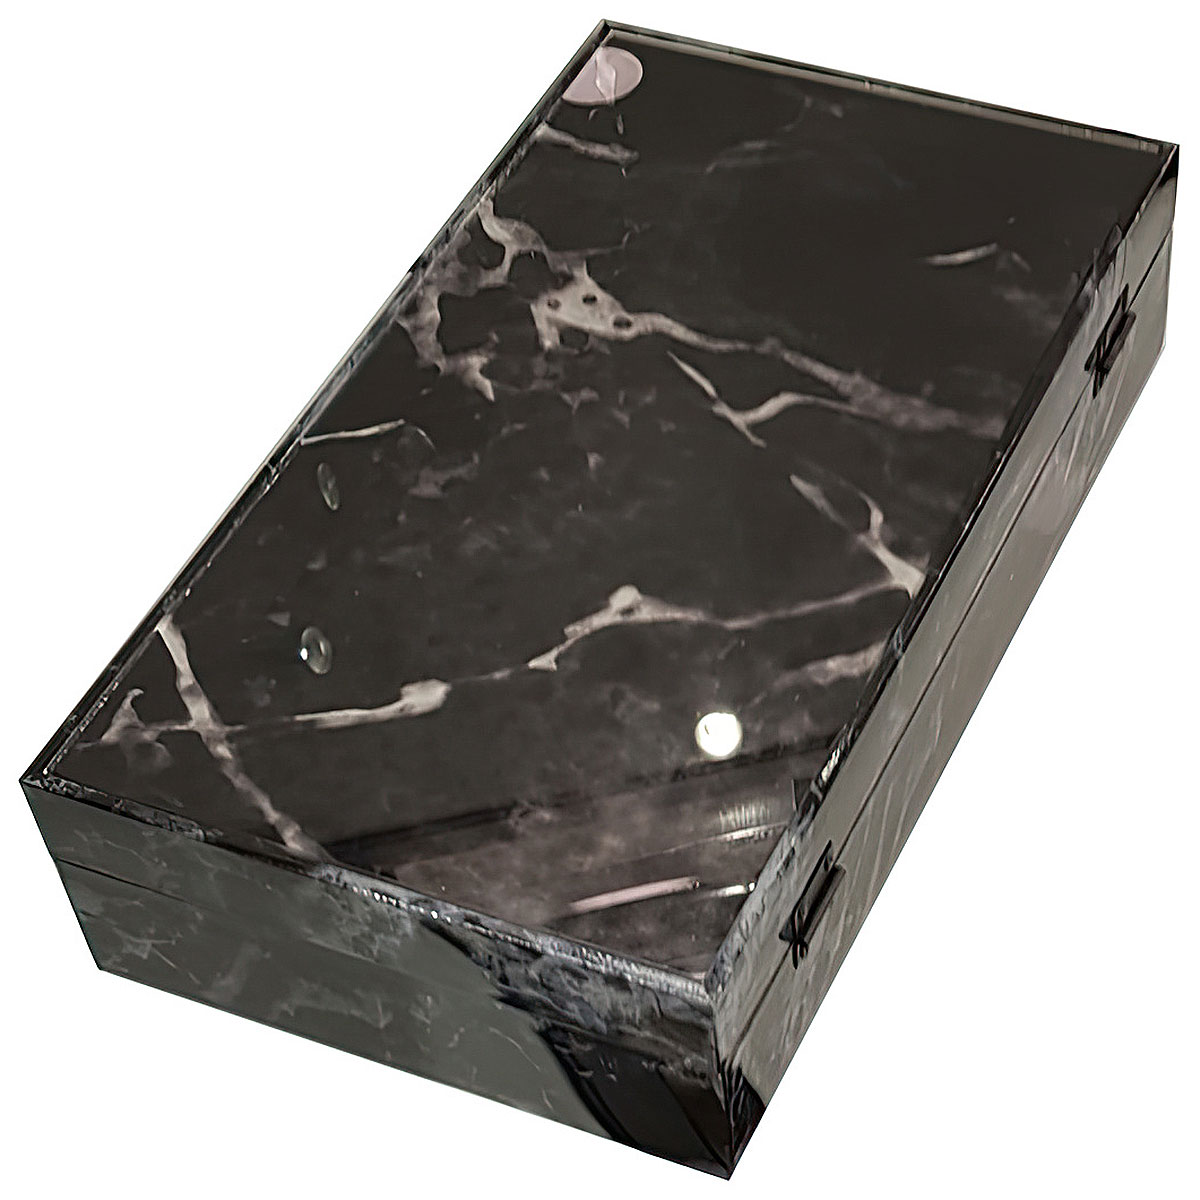 Шкатулка Ozverler marble black 20x36см Ozverler DK-5671, цвет черный